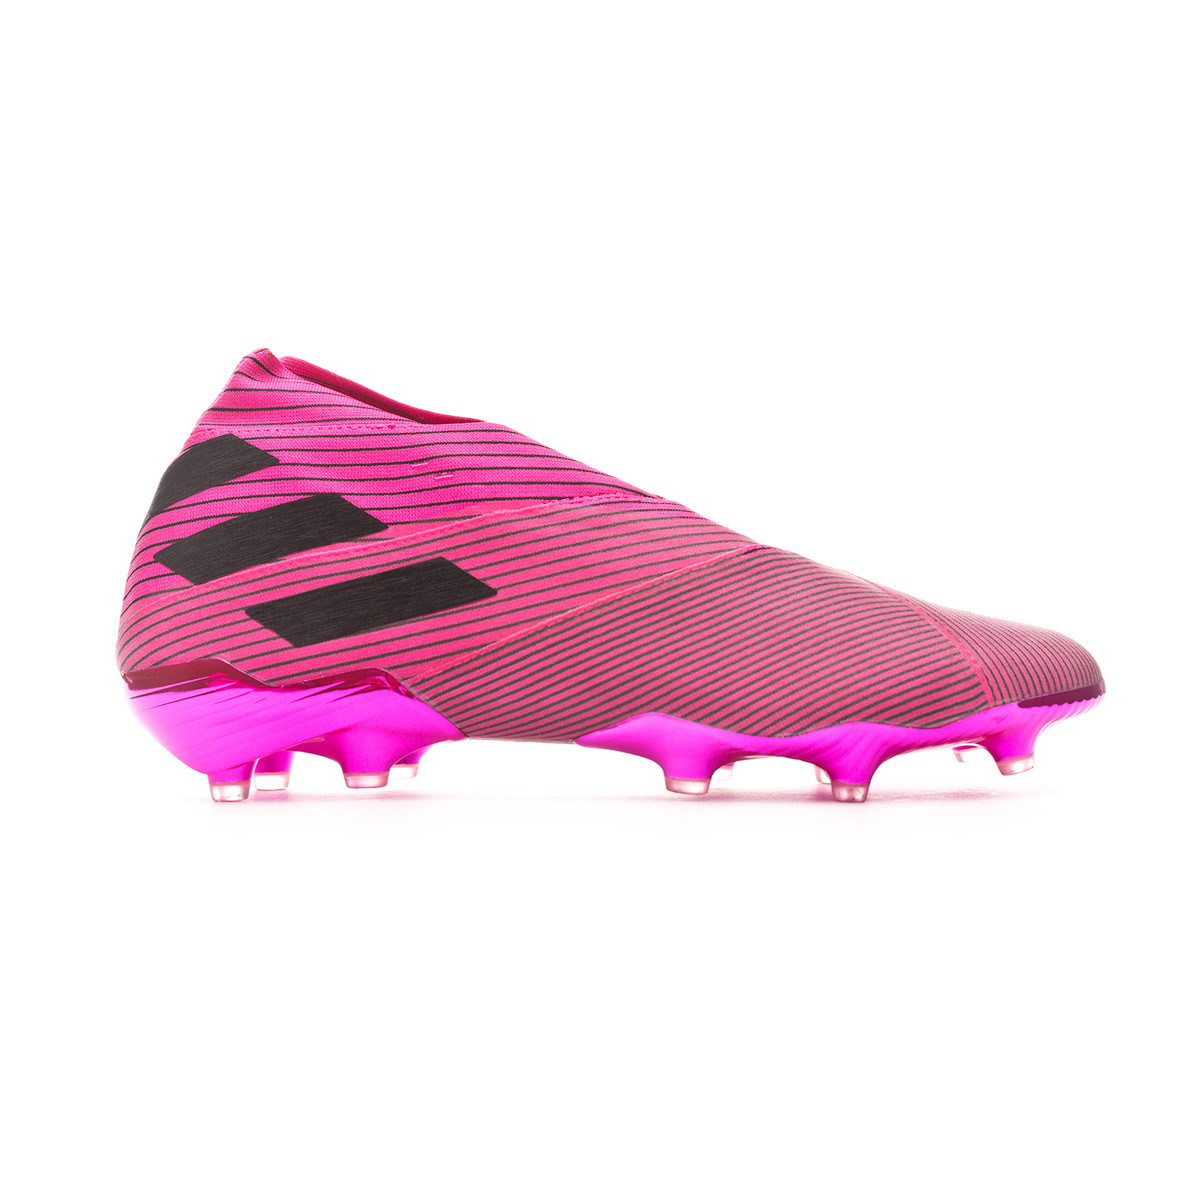 adidas Nemeziz 19+ FG Football Boots